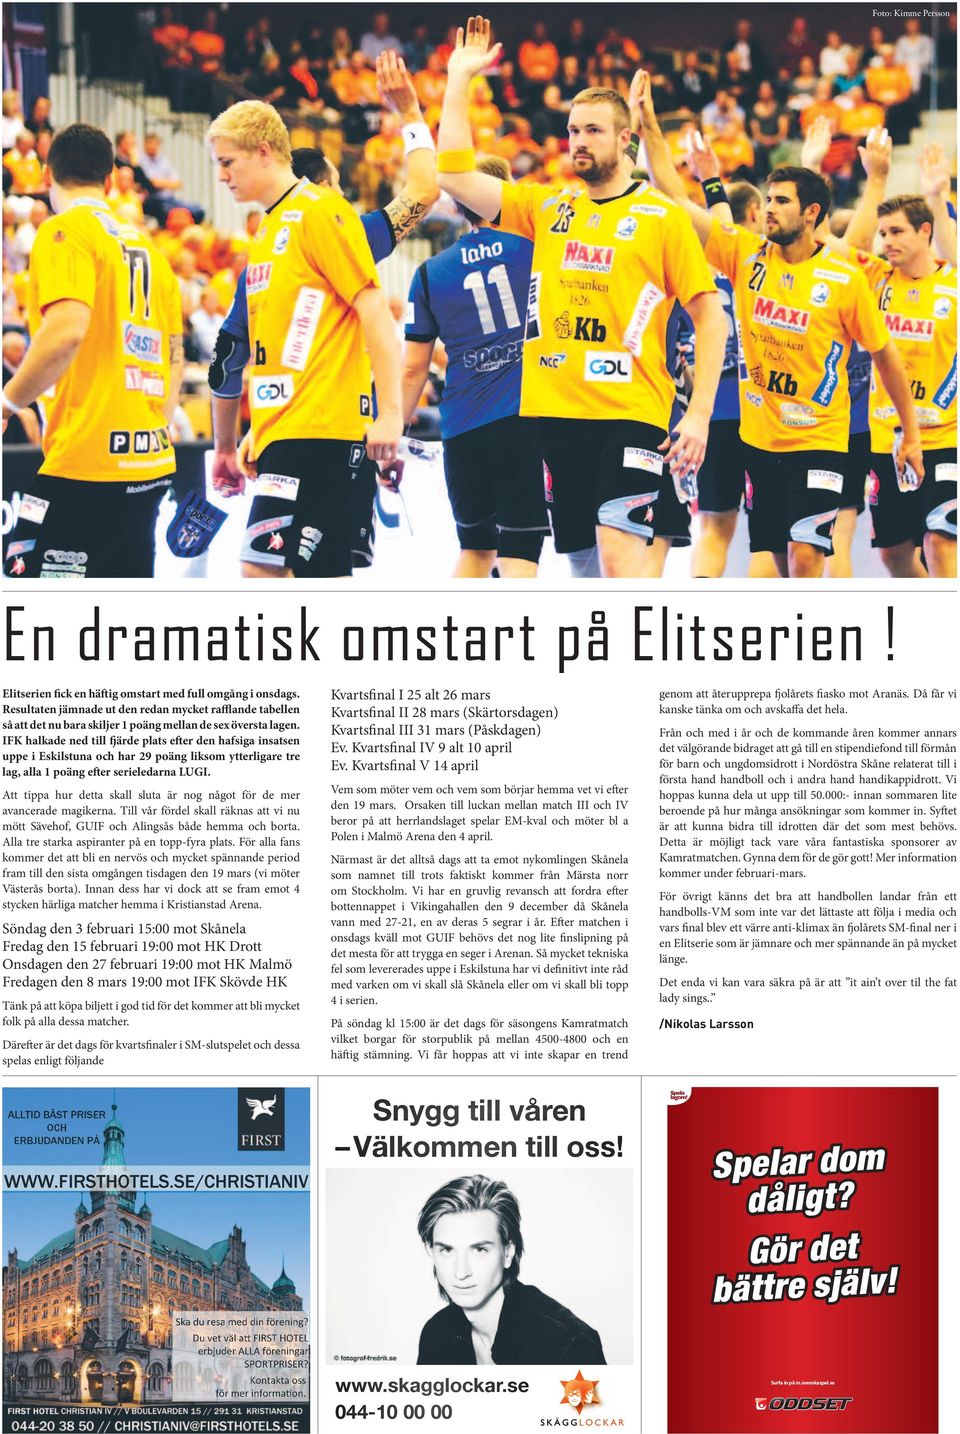 IFK halkade ned till fjärde plats efter den hafsiga insatsen uppe i Eskilstuna och har 29 poäng liksom ytterligare tre lag, alla 1 poäng efter serieledarna LUGI.